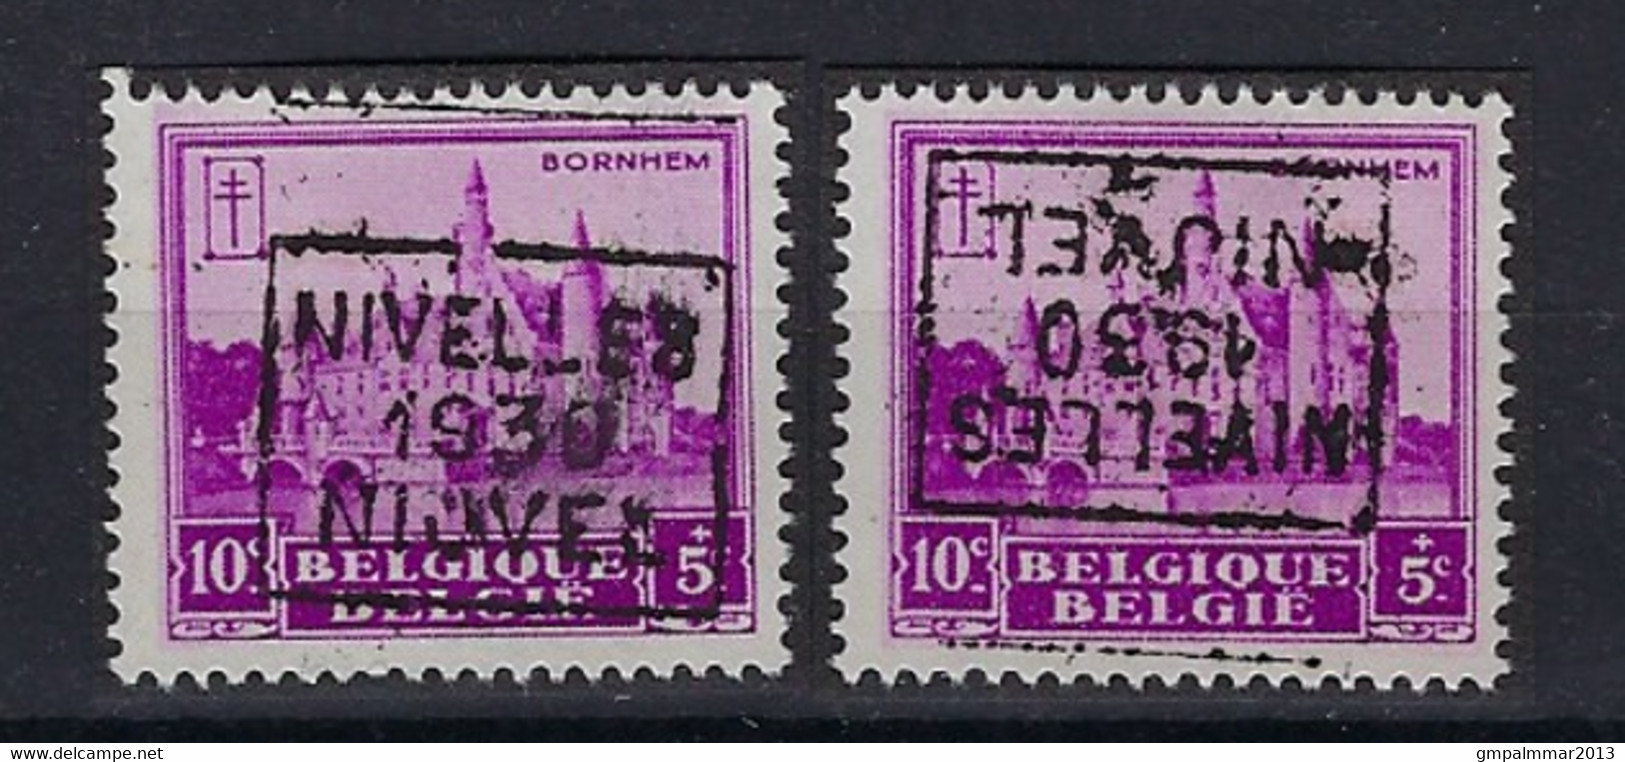 Nr. 308 Kasteel Bornem Voorafstempeling Nr. 5984   C + D NIVELLES 1930 NIJVEL ; Staat Zie Scan ! - Roulettes 1930-..